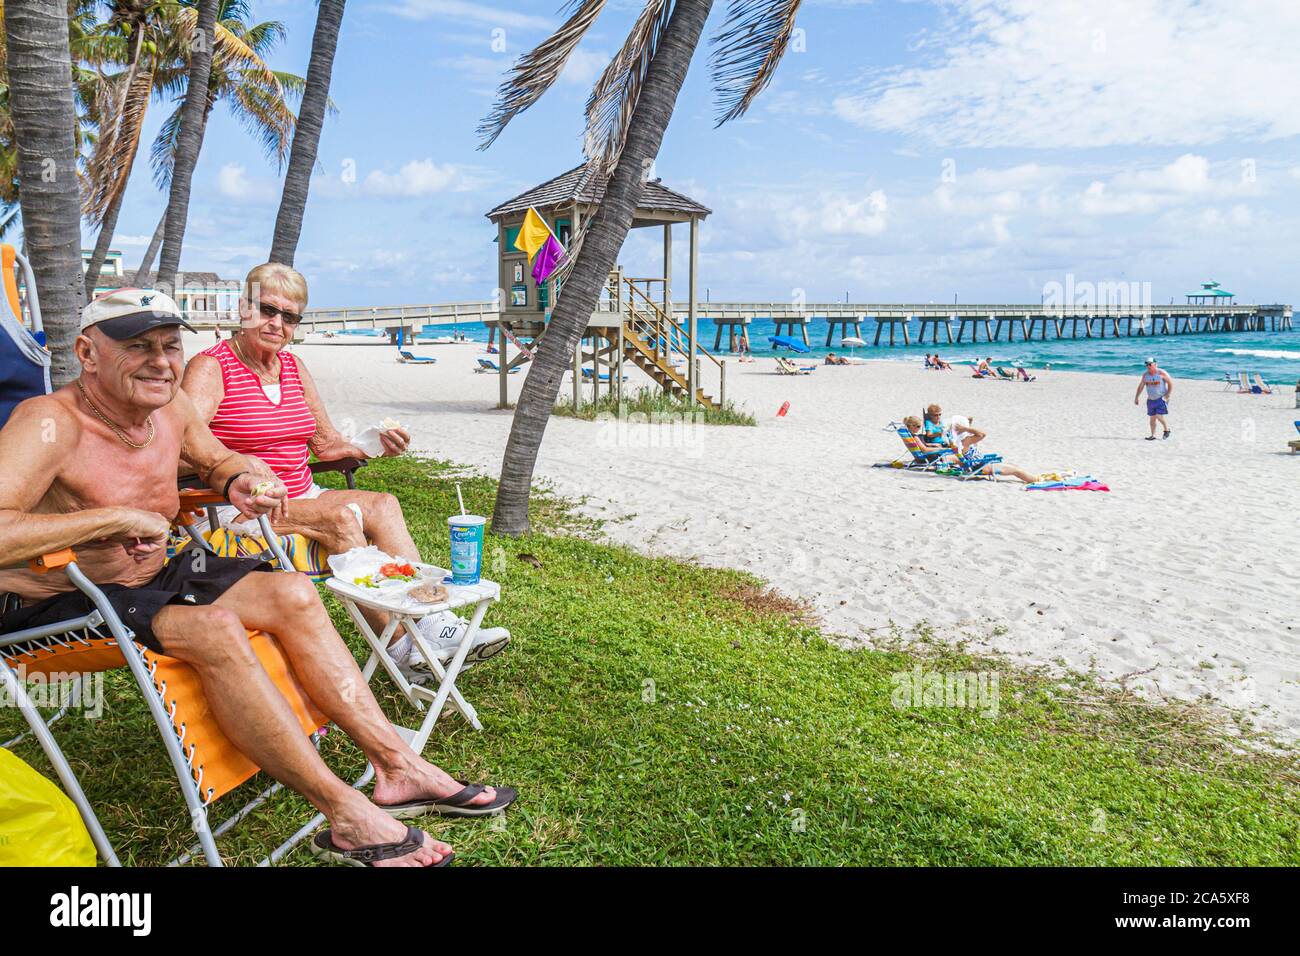 Deerfield Beach Florida, palmiers, sable, public, océan Atlantique, côte d'eau, rivage, surf, bains de soleil, adultes homme hommes hommes, femme femme femme dame, coup d'Etat Banque D'Images